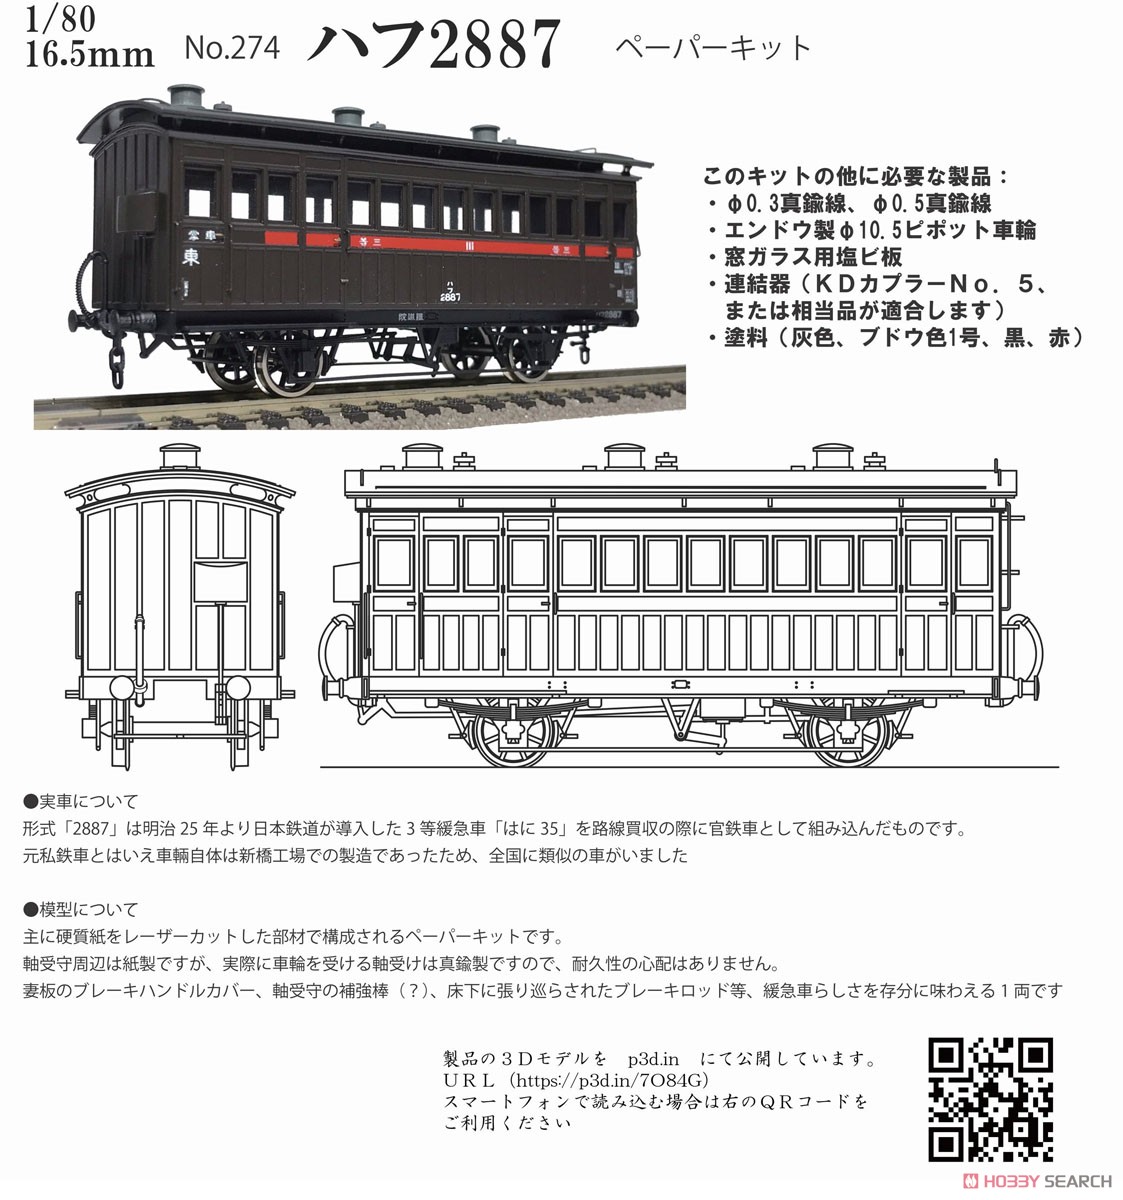 16番(HO) 鉄道院 ハフ2887 ペーパーキット (組み立てキット) (鉄道模型) その他の画像1